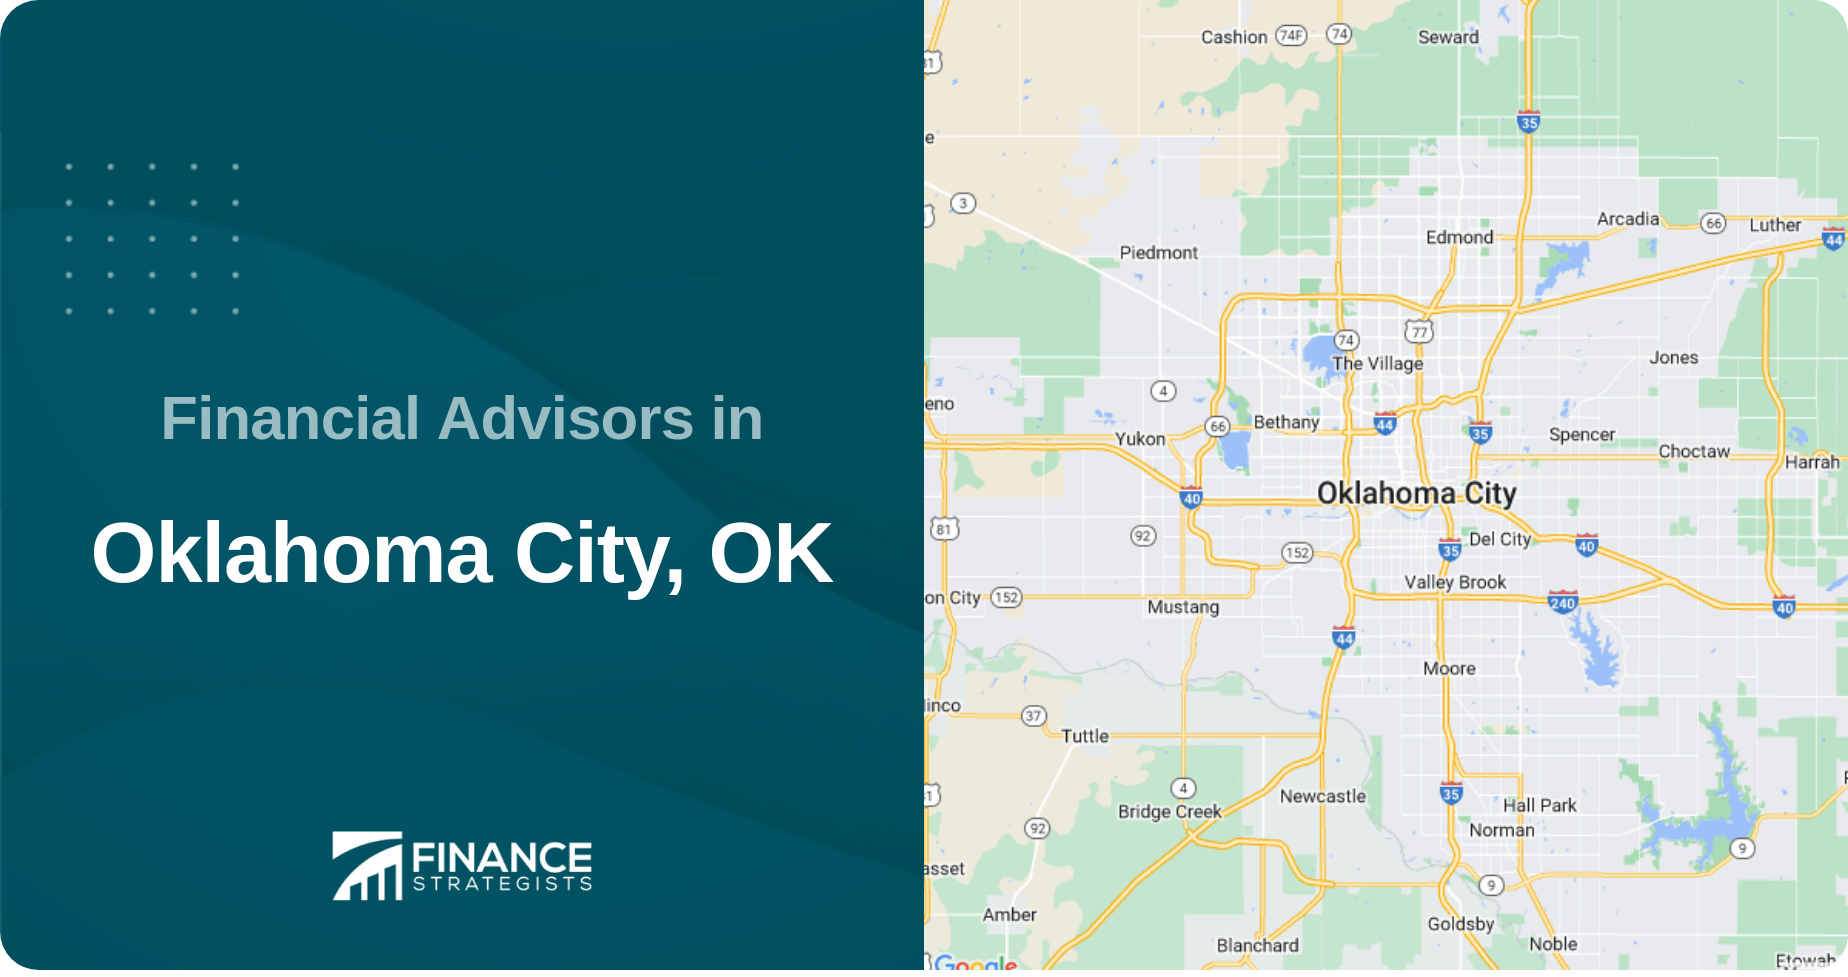 Financial Advisors in Oklahoma City, OK